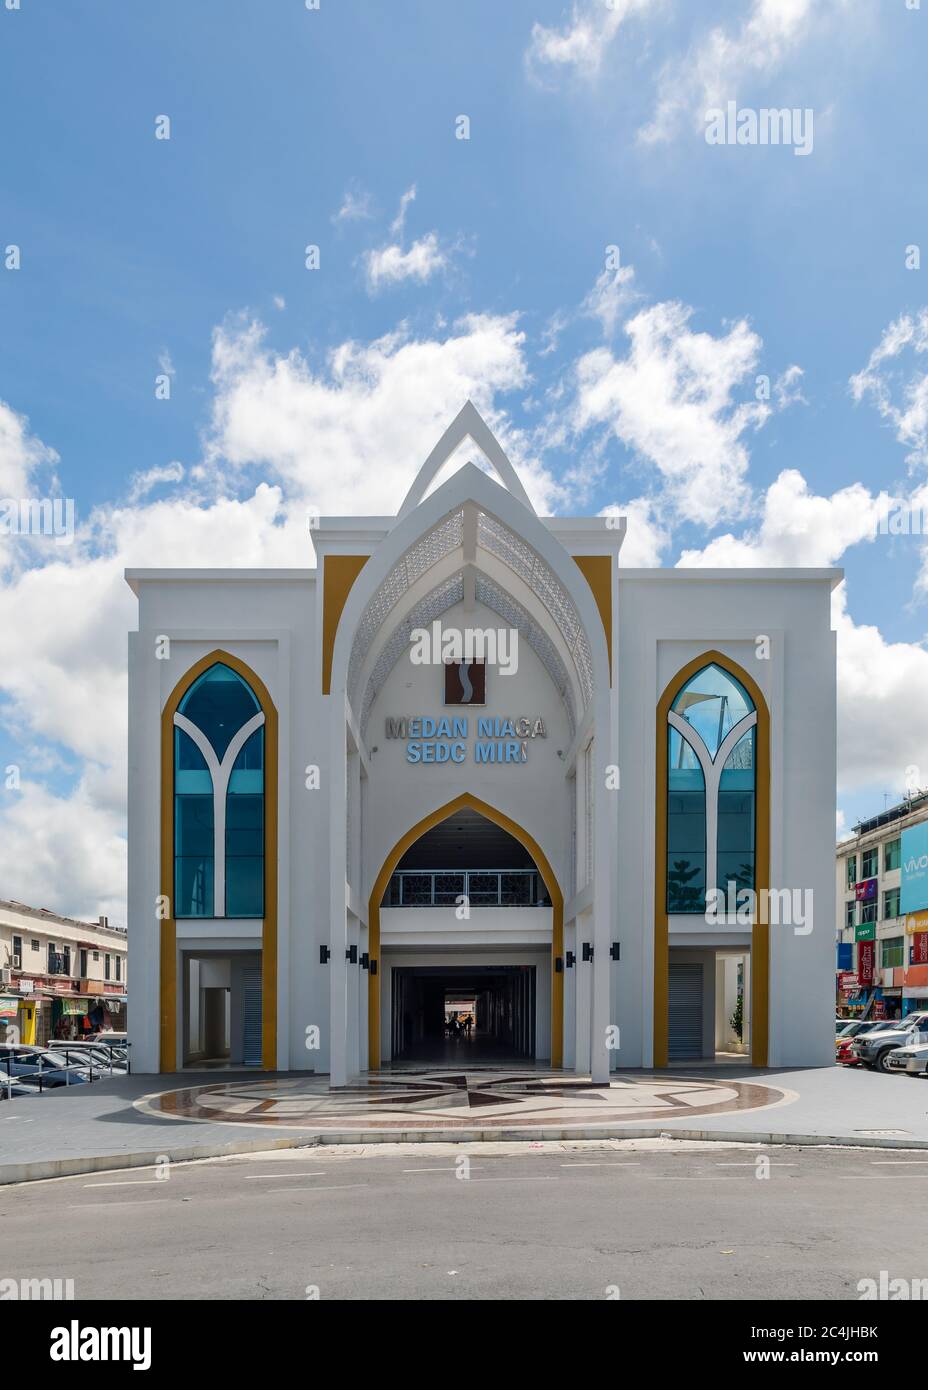 Miri, Sarawak, Malasia: "Medan Niaga", un edificio de estilo arquitectónico islámico de la Corporación de Desarrollo Económico de Sarawak (SEDC) Foto de stock